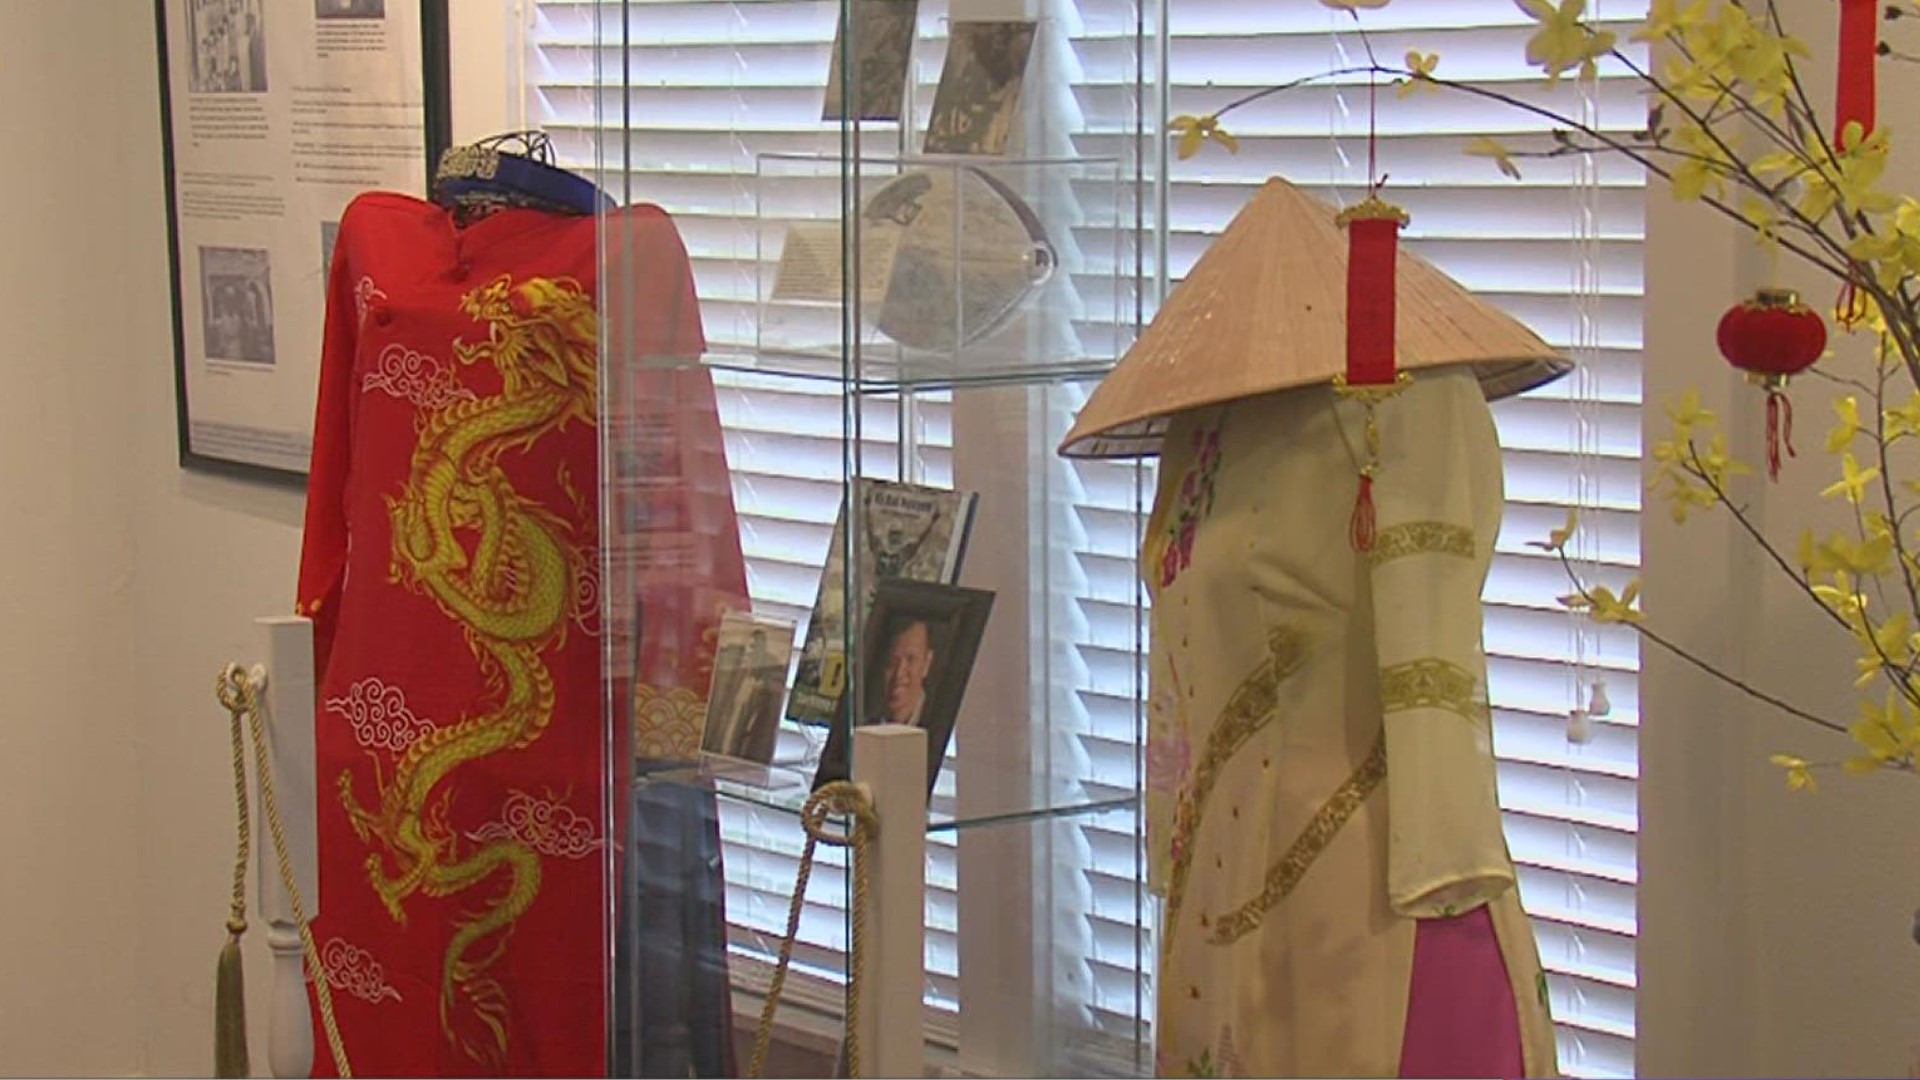 New Vietnamese cultural exhibit opens in Rockport